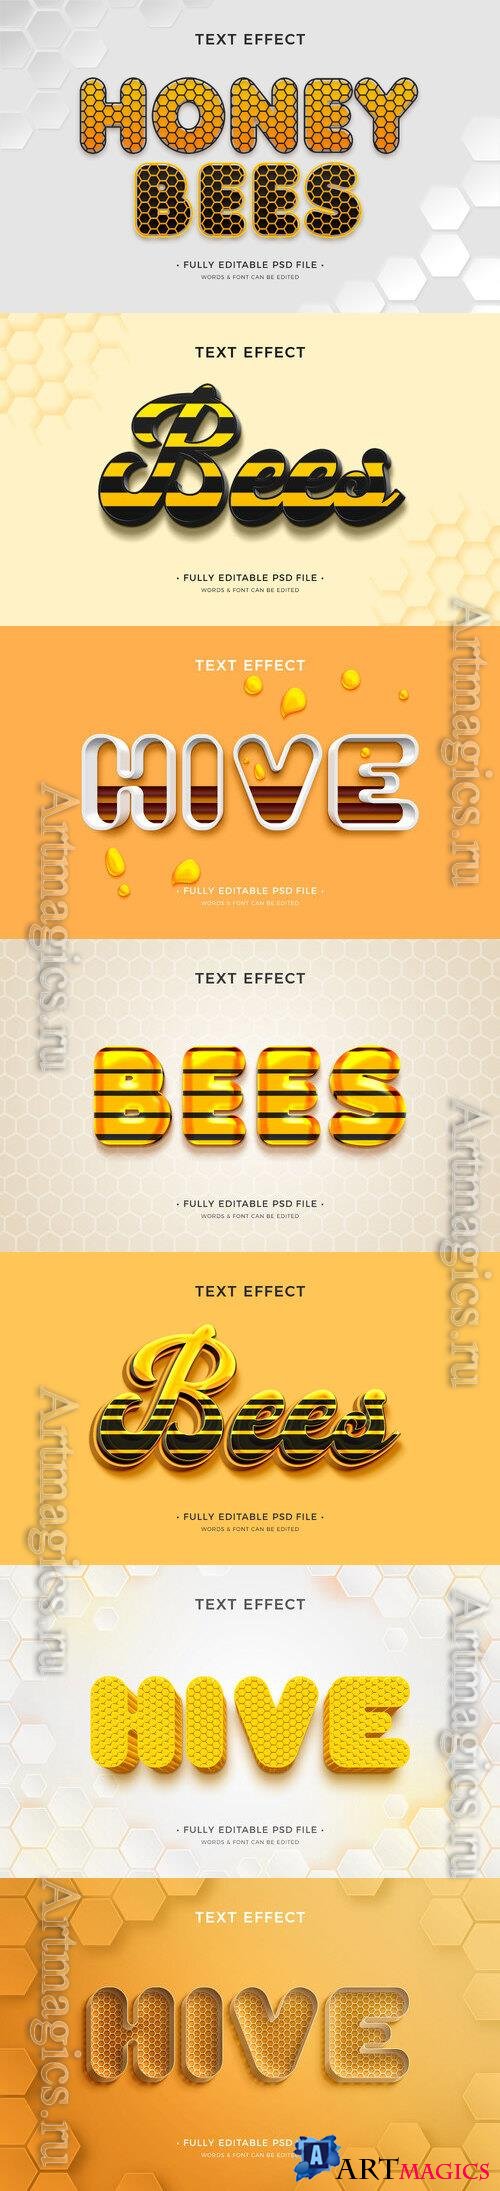 PSD honey bee text effect